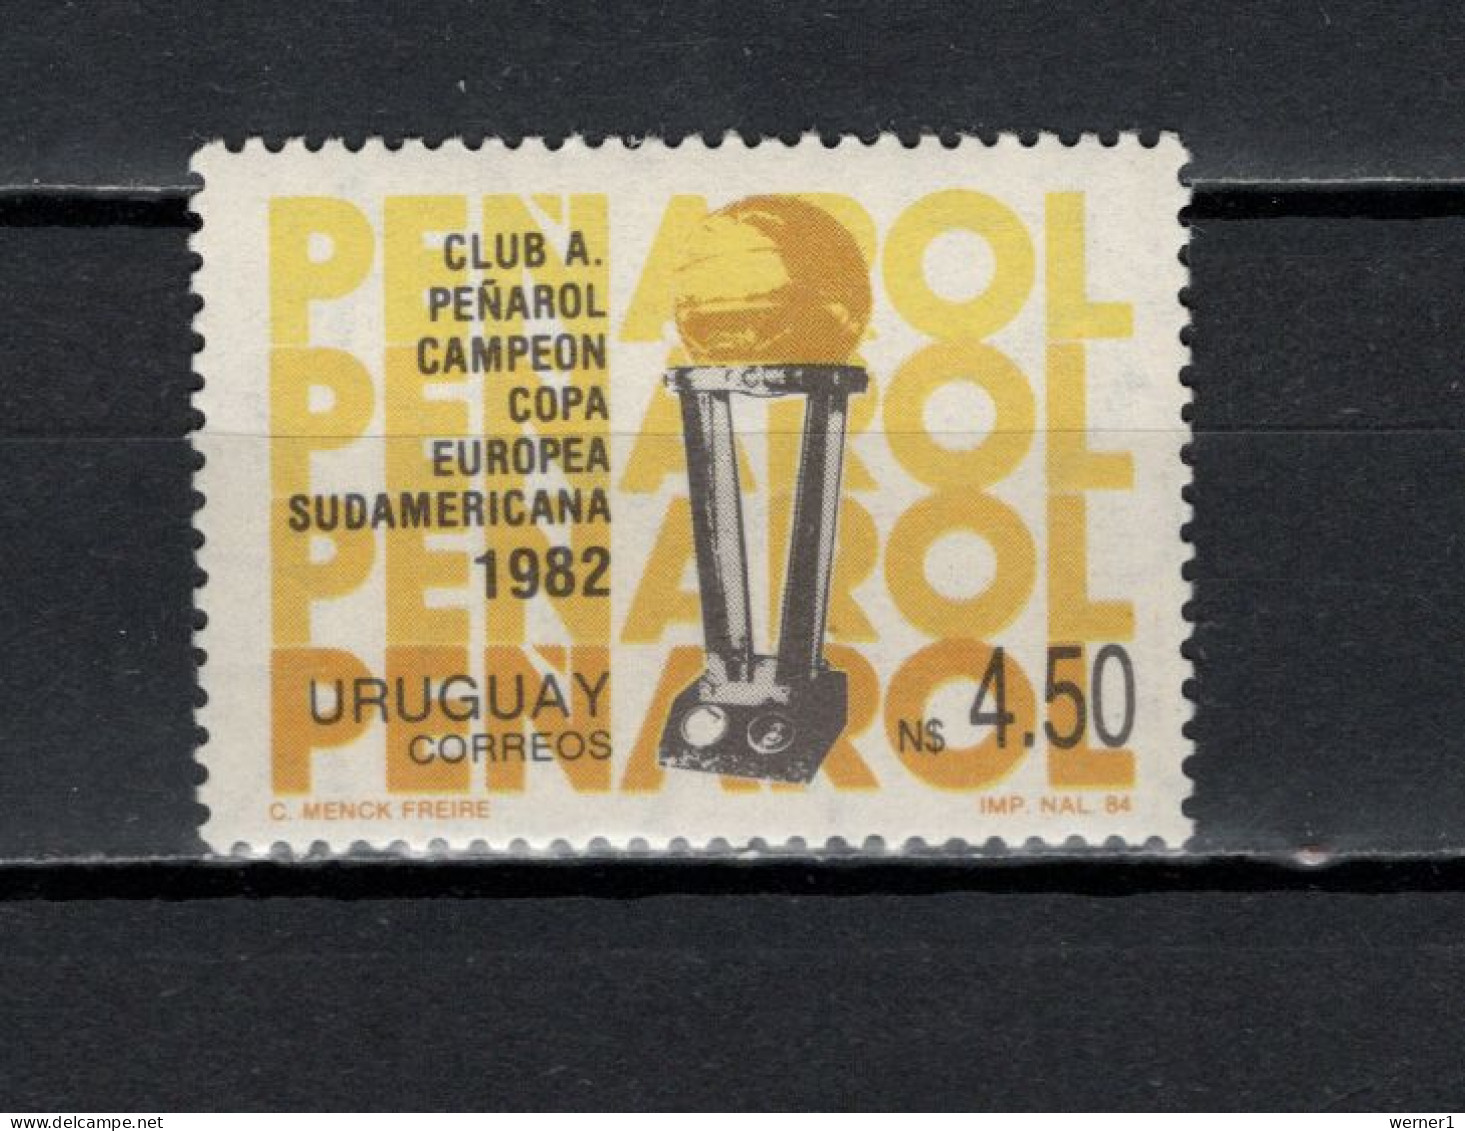 Uruguay 1984 Football Soccer, A. Penarol Soccer Club Stamp MNH - Berühmte Teams